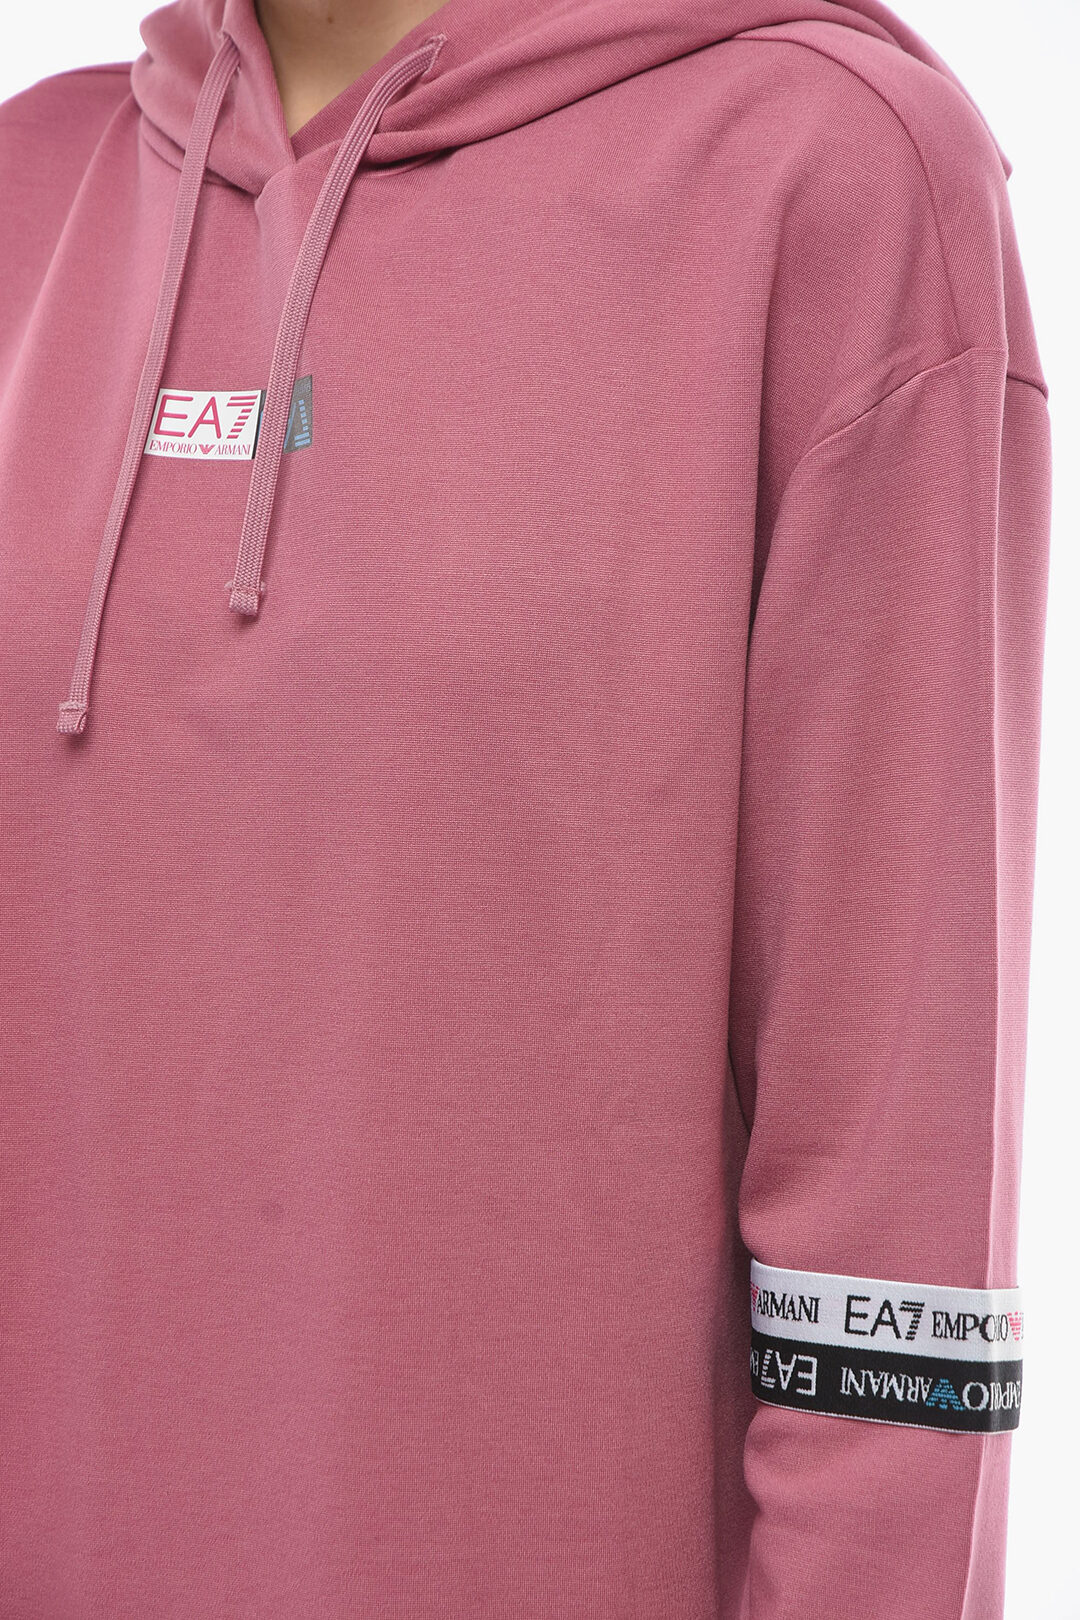 EA7 EMPORIO ARMANI sweatshirt 3LPM62.PJ05Z-1597 | S'portofino